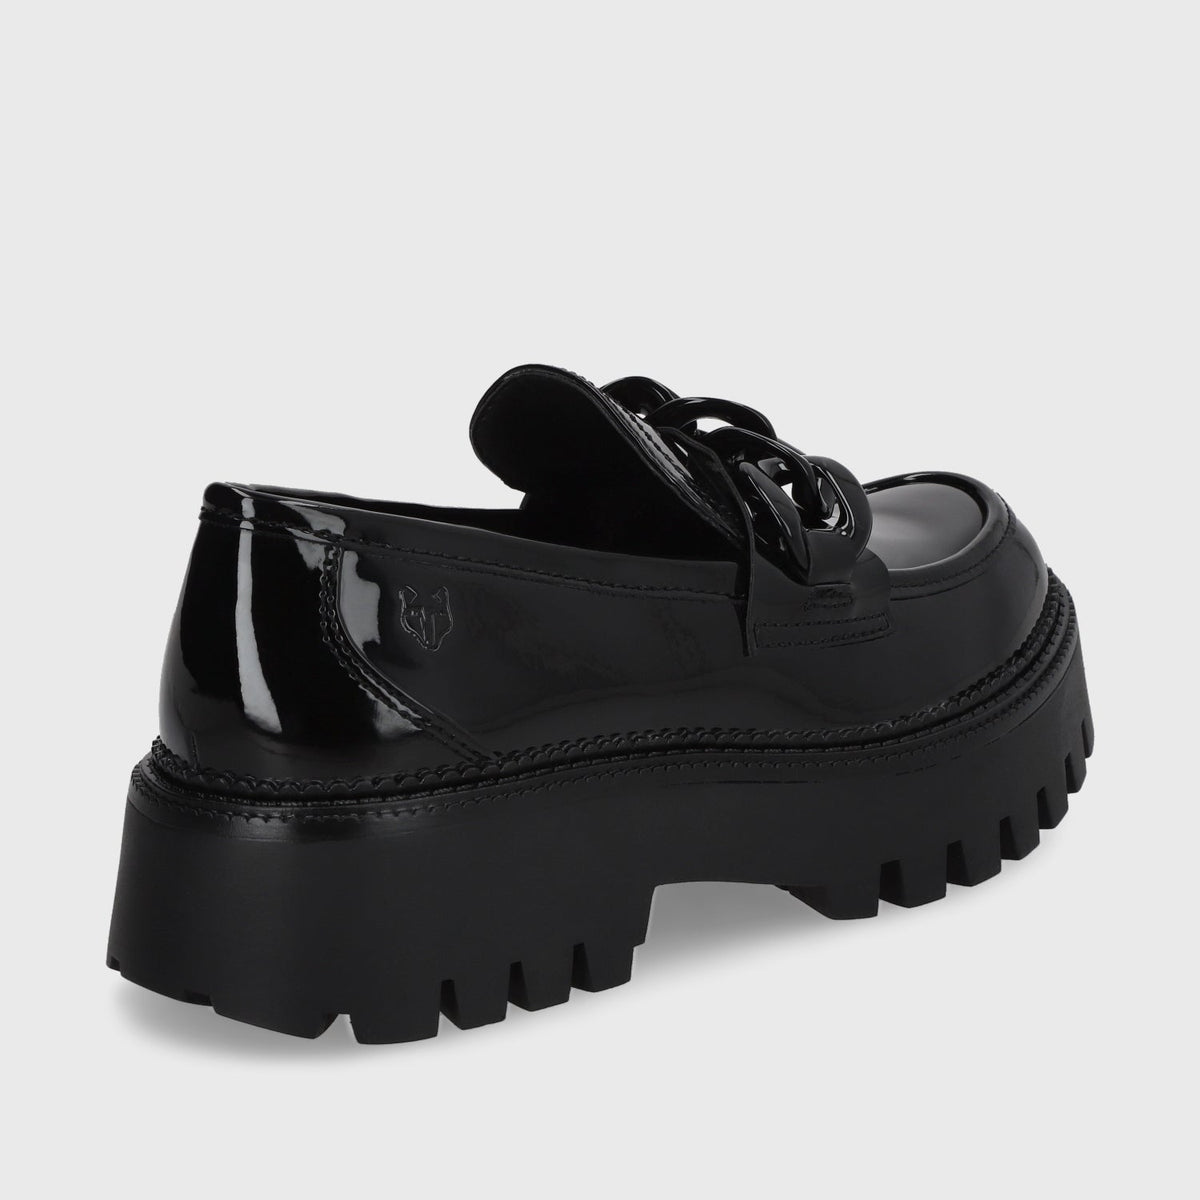 Zapato Plataforma Negro Mujer 46301 - Gotta Chile